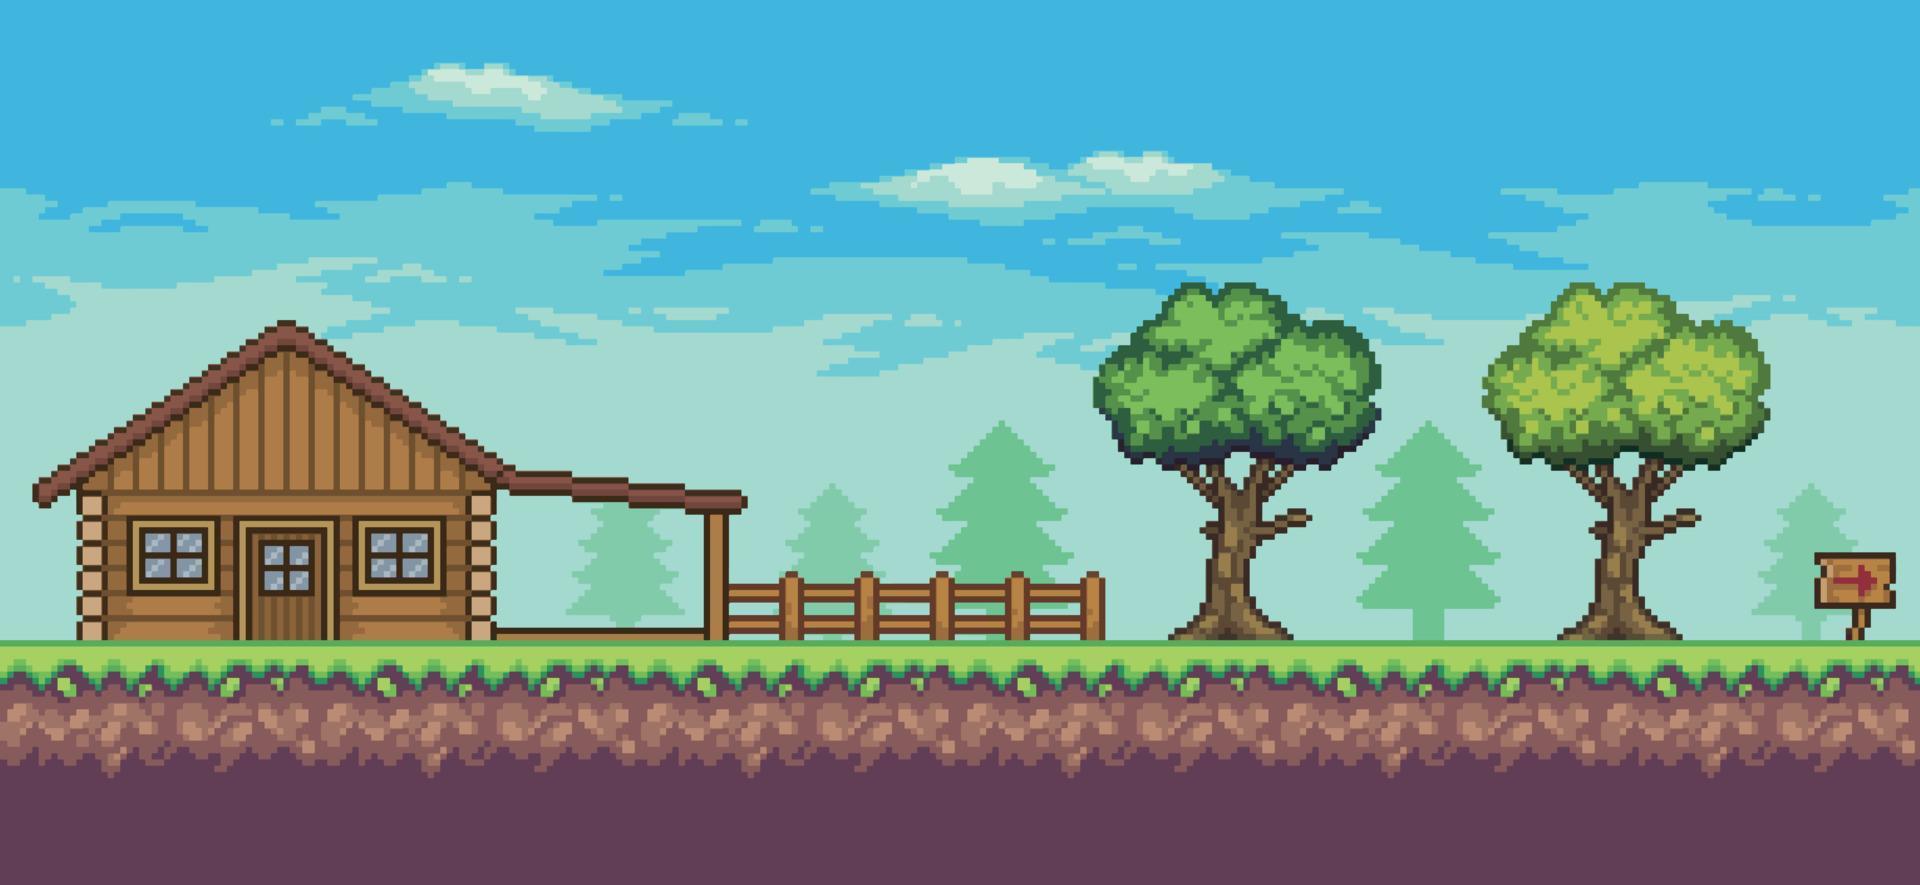 pixel art arkadspelscen med trähus, träd, staket och moln 8bit bakgrund vektor